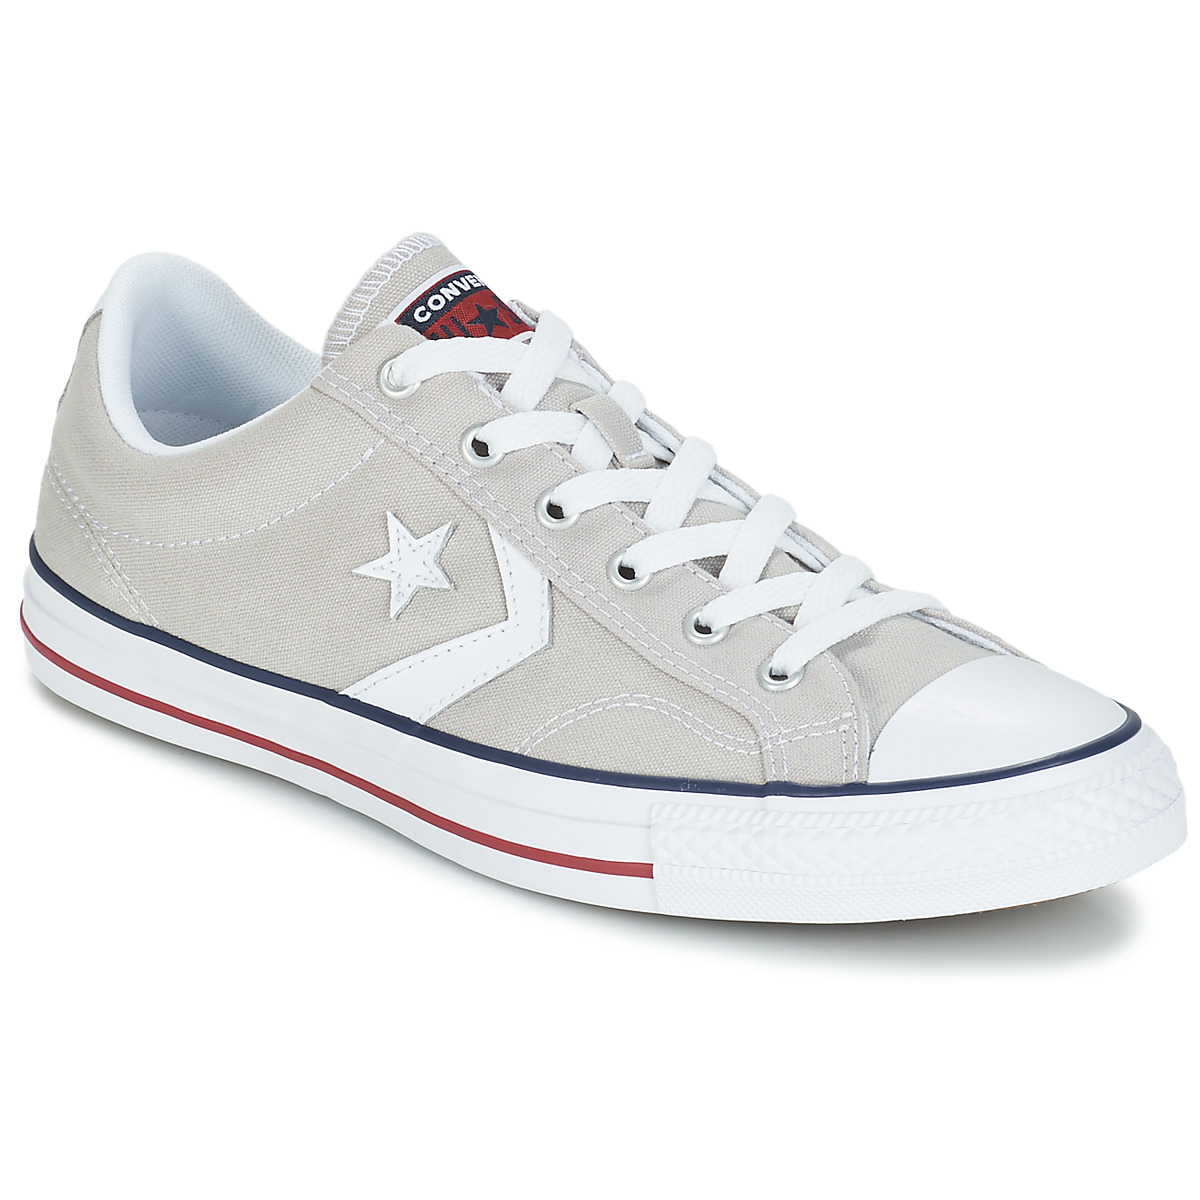 Converse STAR PLAYER CORE CANVAS OX Gris / Claro / Blanco - Envío gratis |  Spartoo.es ! - Zapatos Deportivas bajas 45,50 €